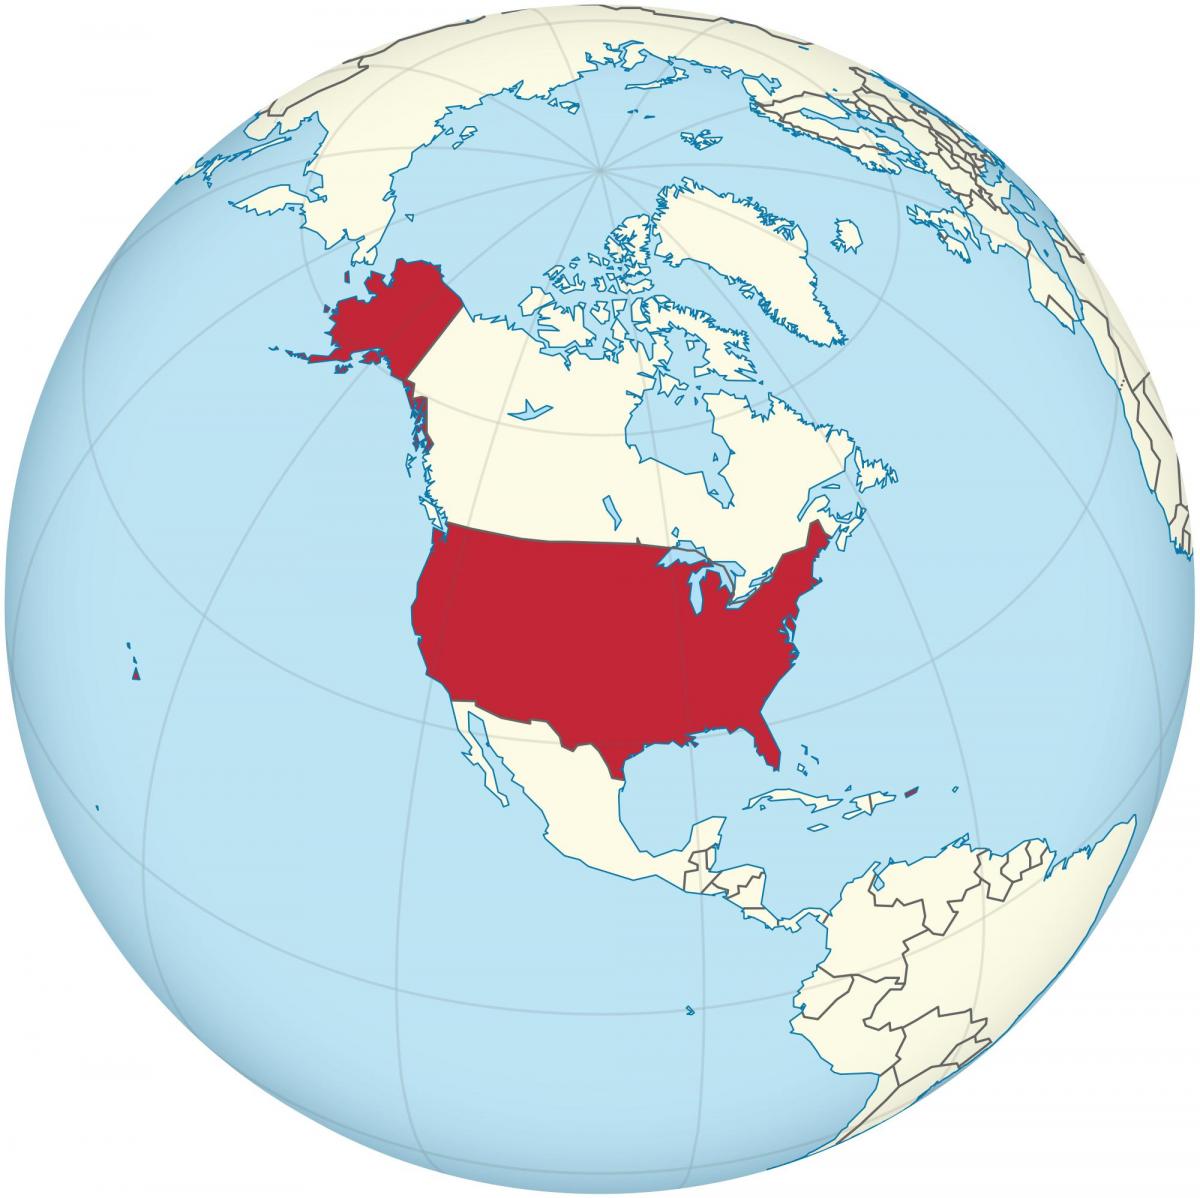 الولايات المتحدة الأمريكية على خريطة الأمريكتين